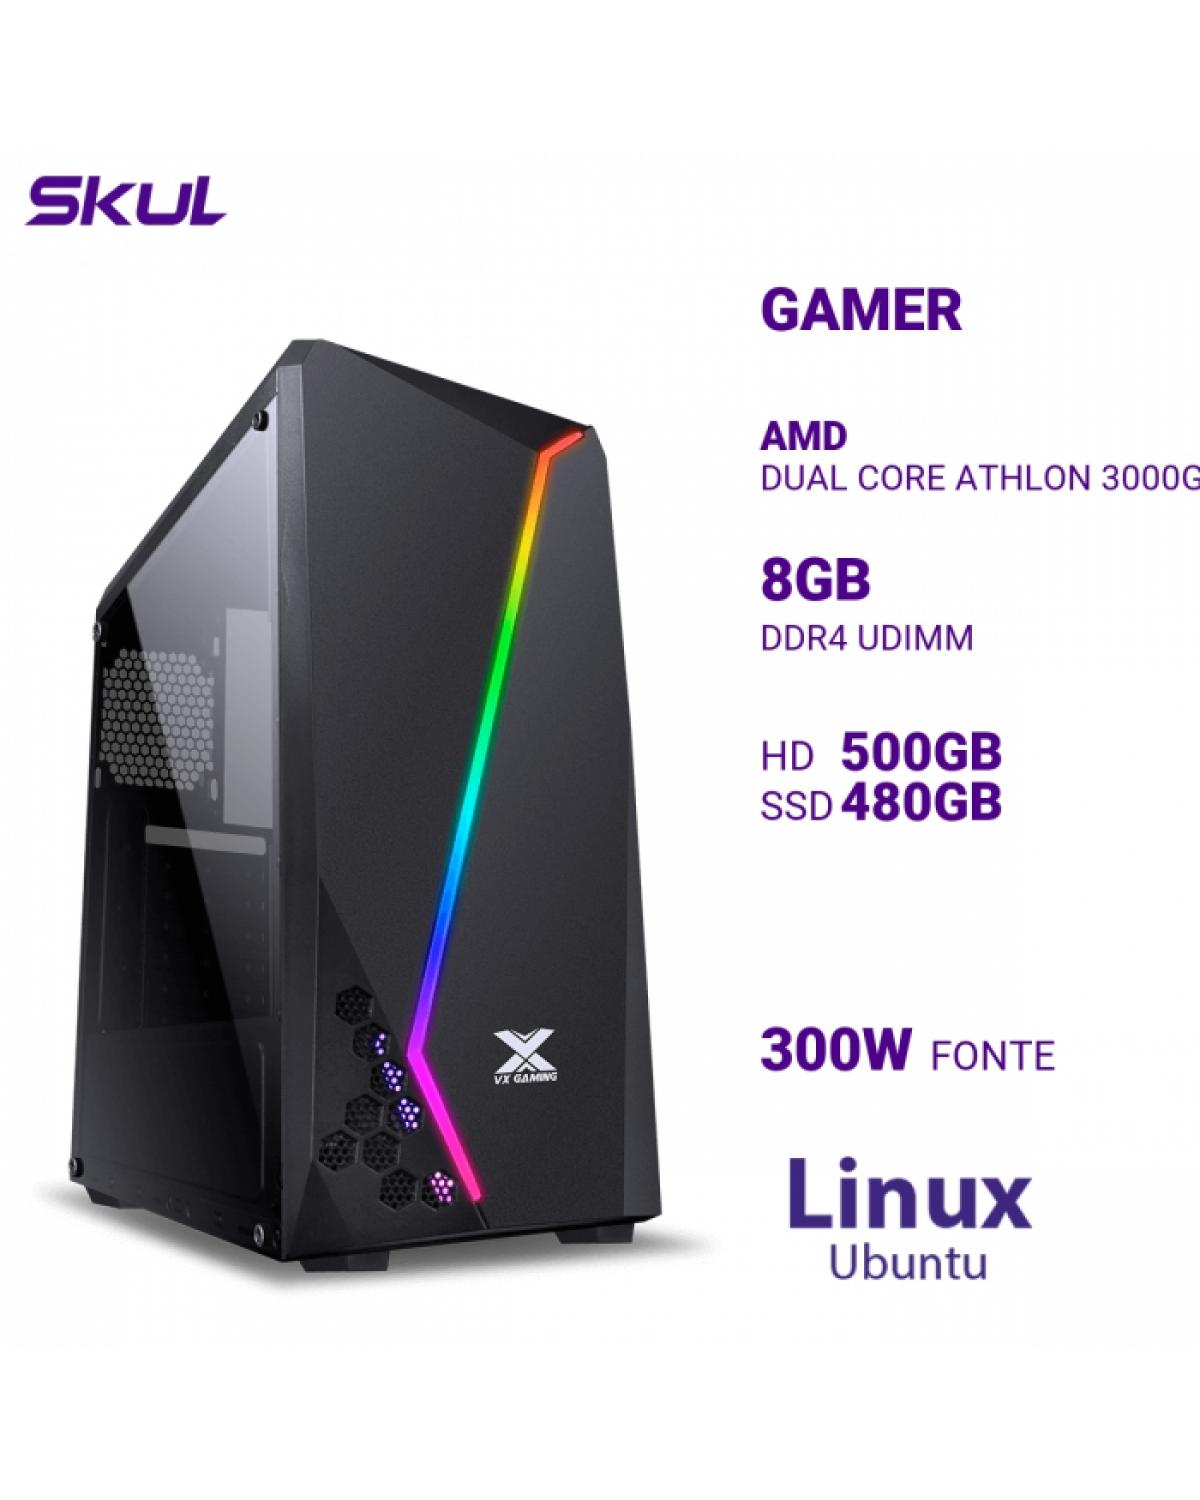 COMPUTADOR GAMER 1000 DUAL CORE ATHLON 3000G 3.50GHZ MEM 8GB DDR4 HD 500GB SSD 480GB FONTE 300W LINUX